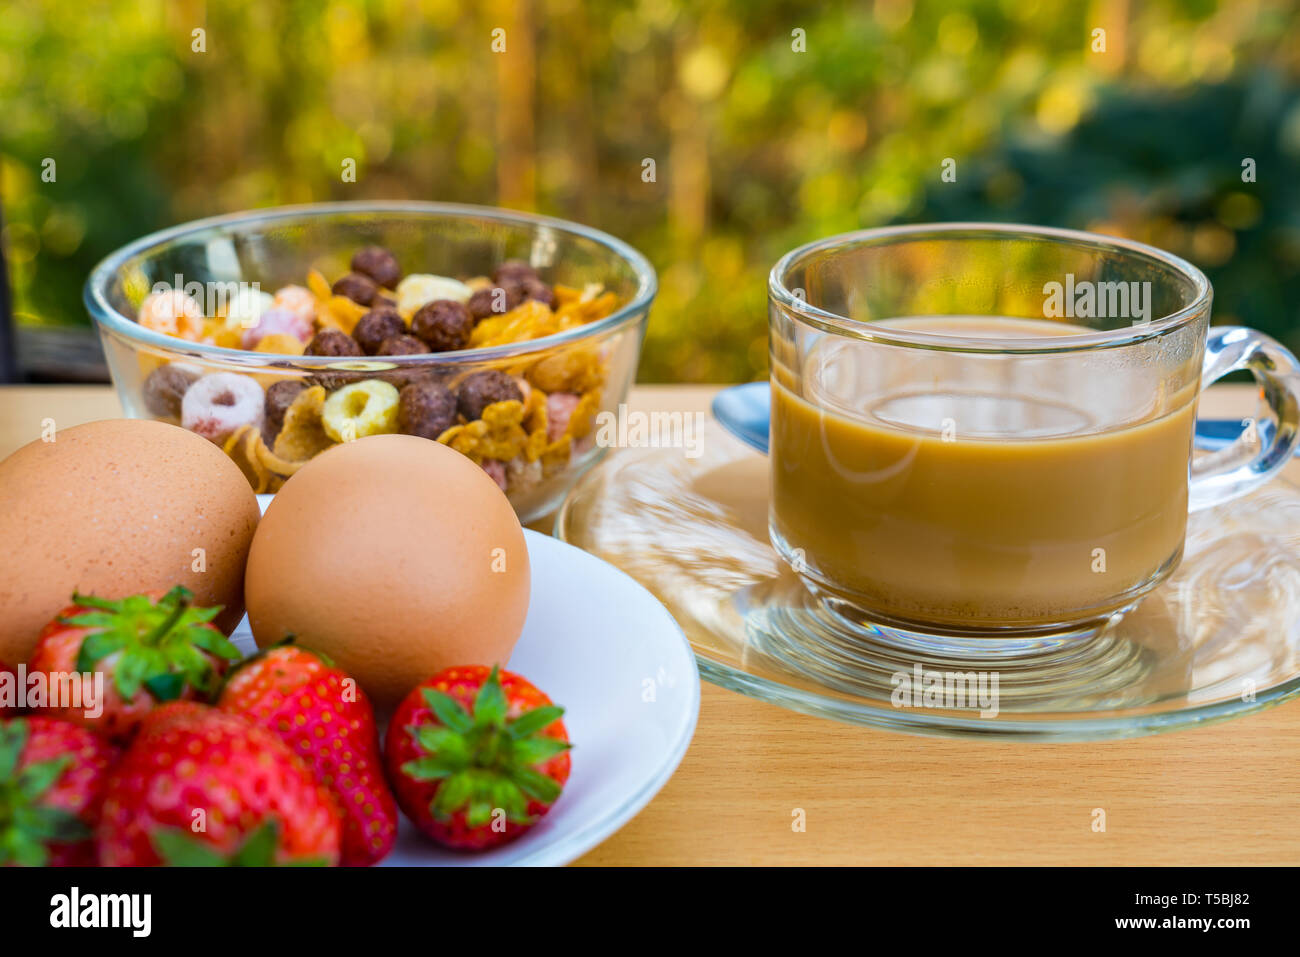 Café chaud, cornflekes, faire bouillir les œufs et fraise pour le petit déjeuner Banque D'Images